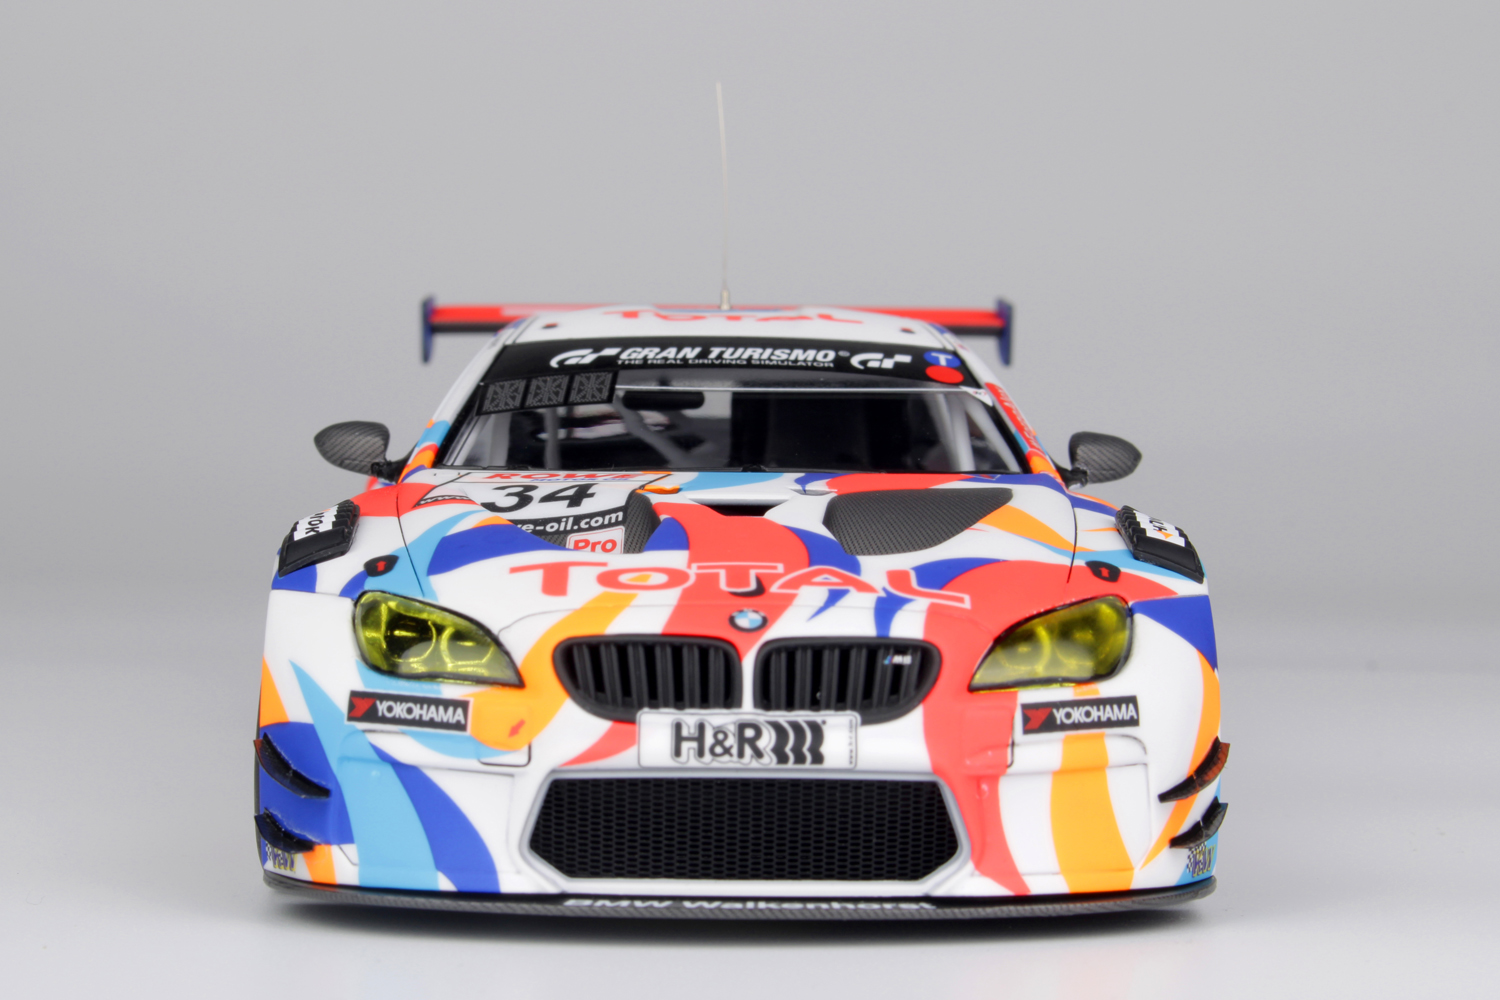 1/24 BMW M6 GT3 2020 Nürburgring Endurance Series Champion